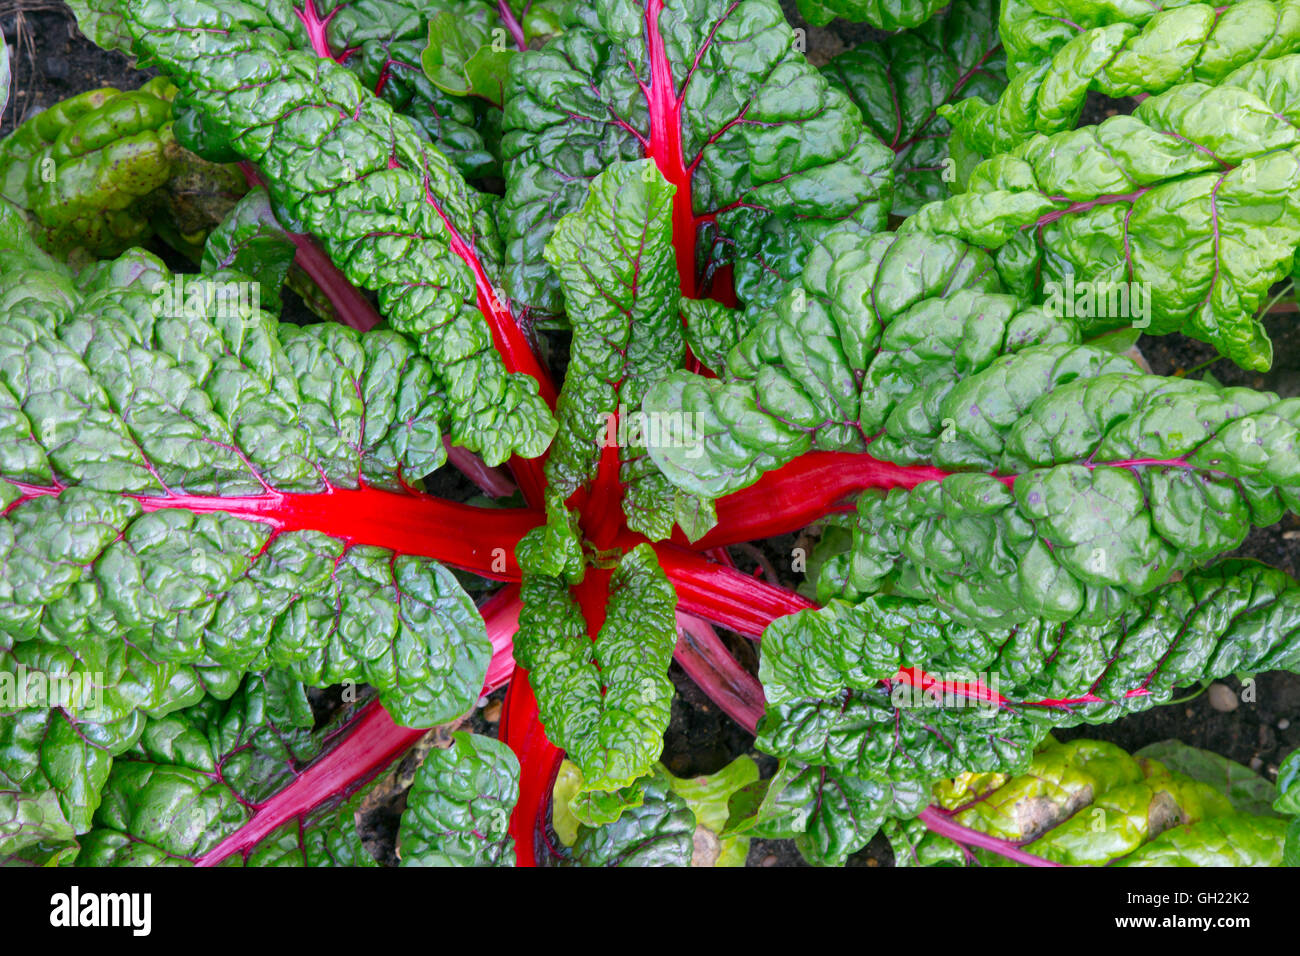 La rhubarbe Chard Beta vulgaris légumes verts feuillus souvent utilisé dans la cuisine méditerranéenne Banque D'Images